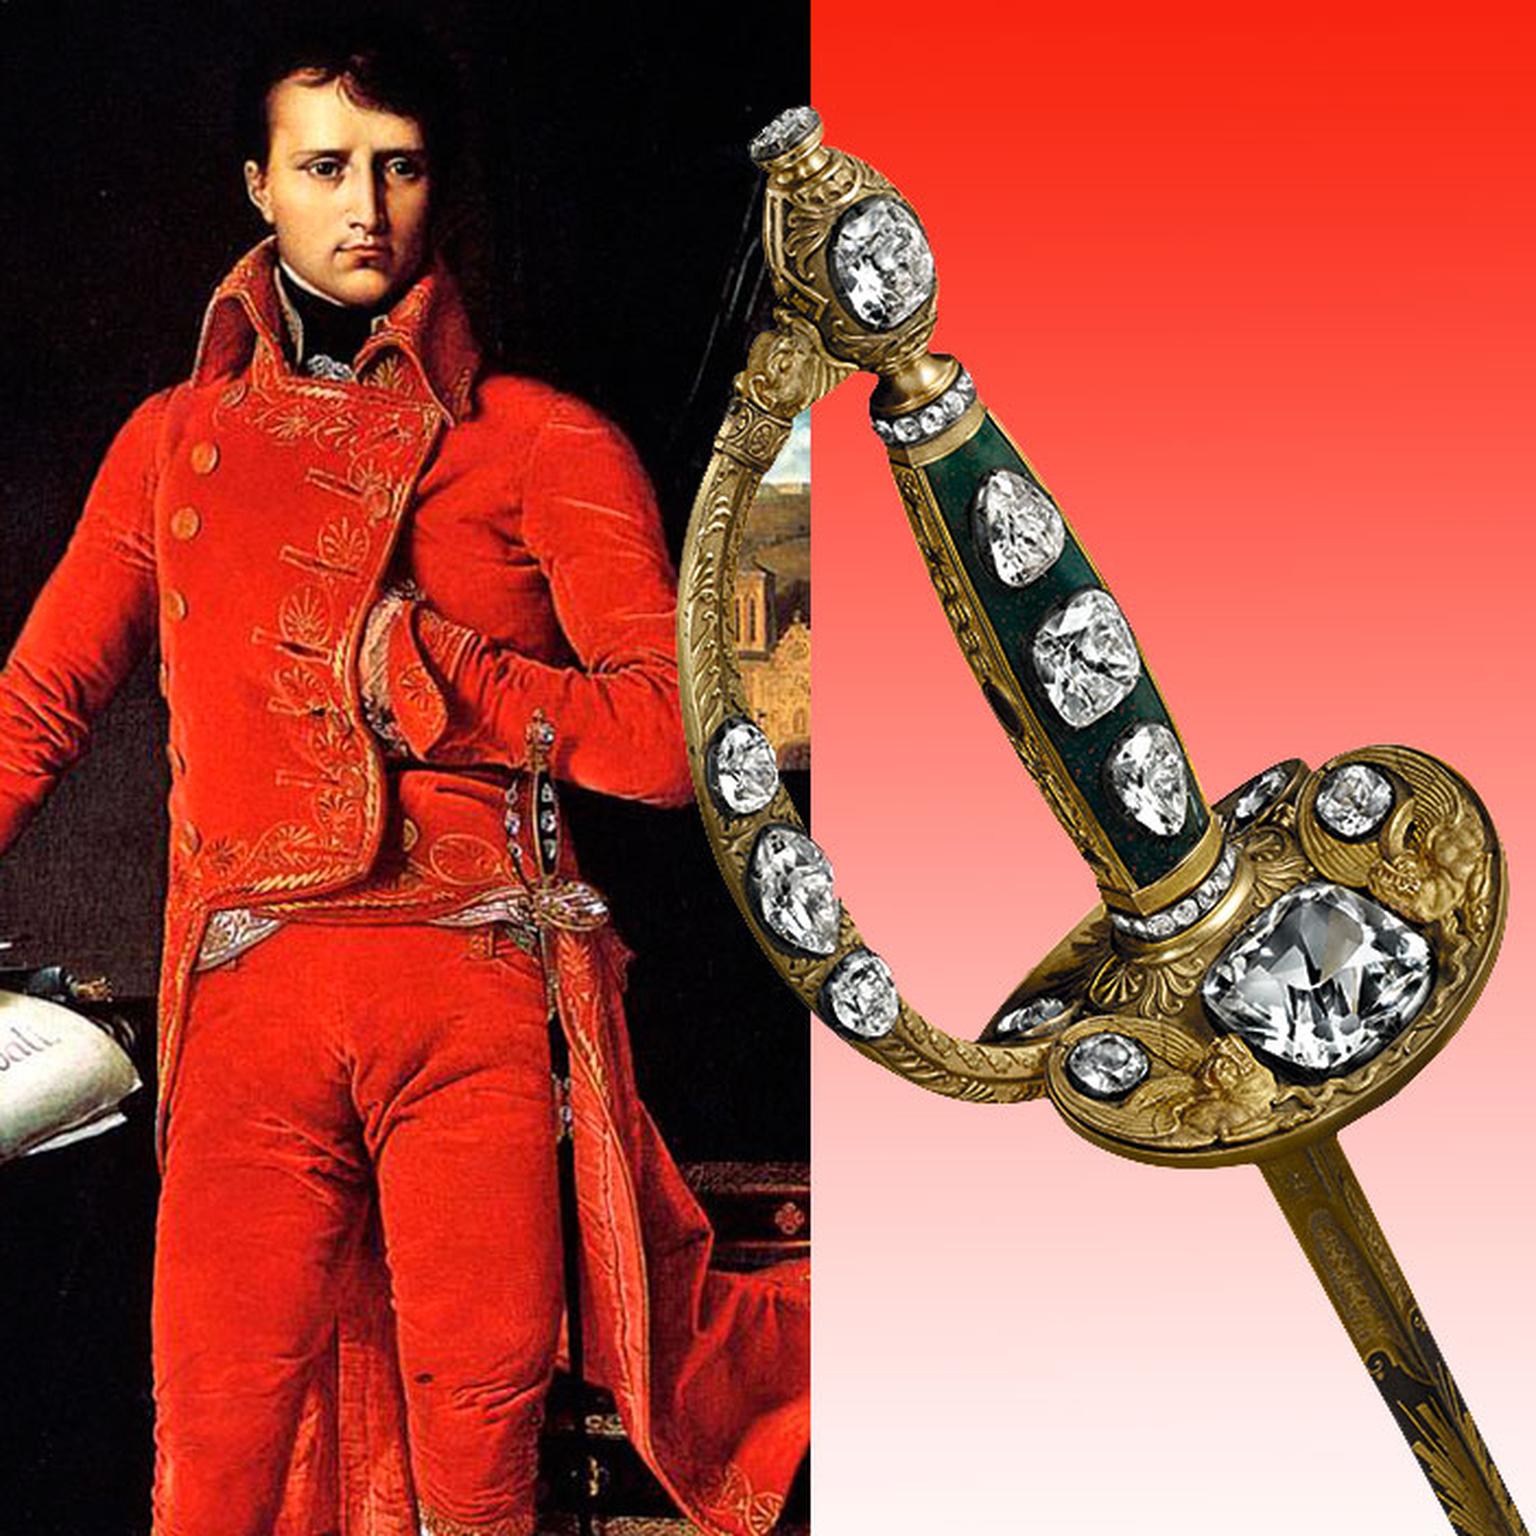 Emperor Napoleon's coronation sword